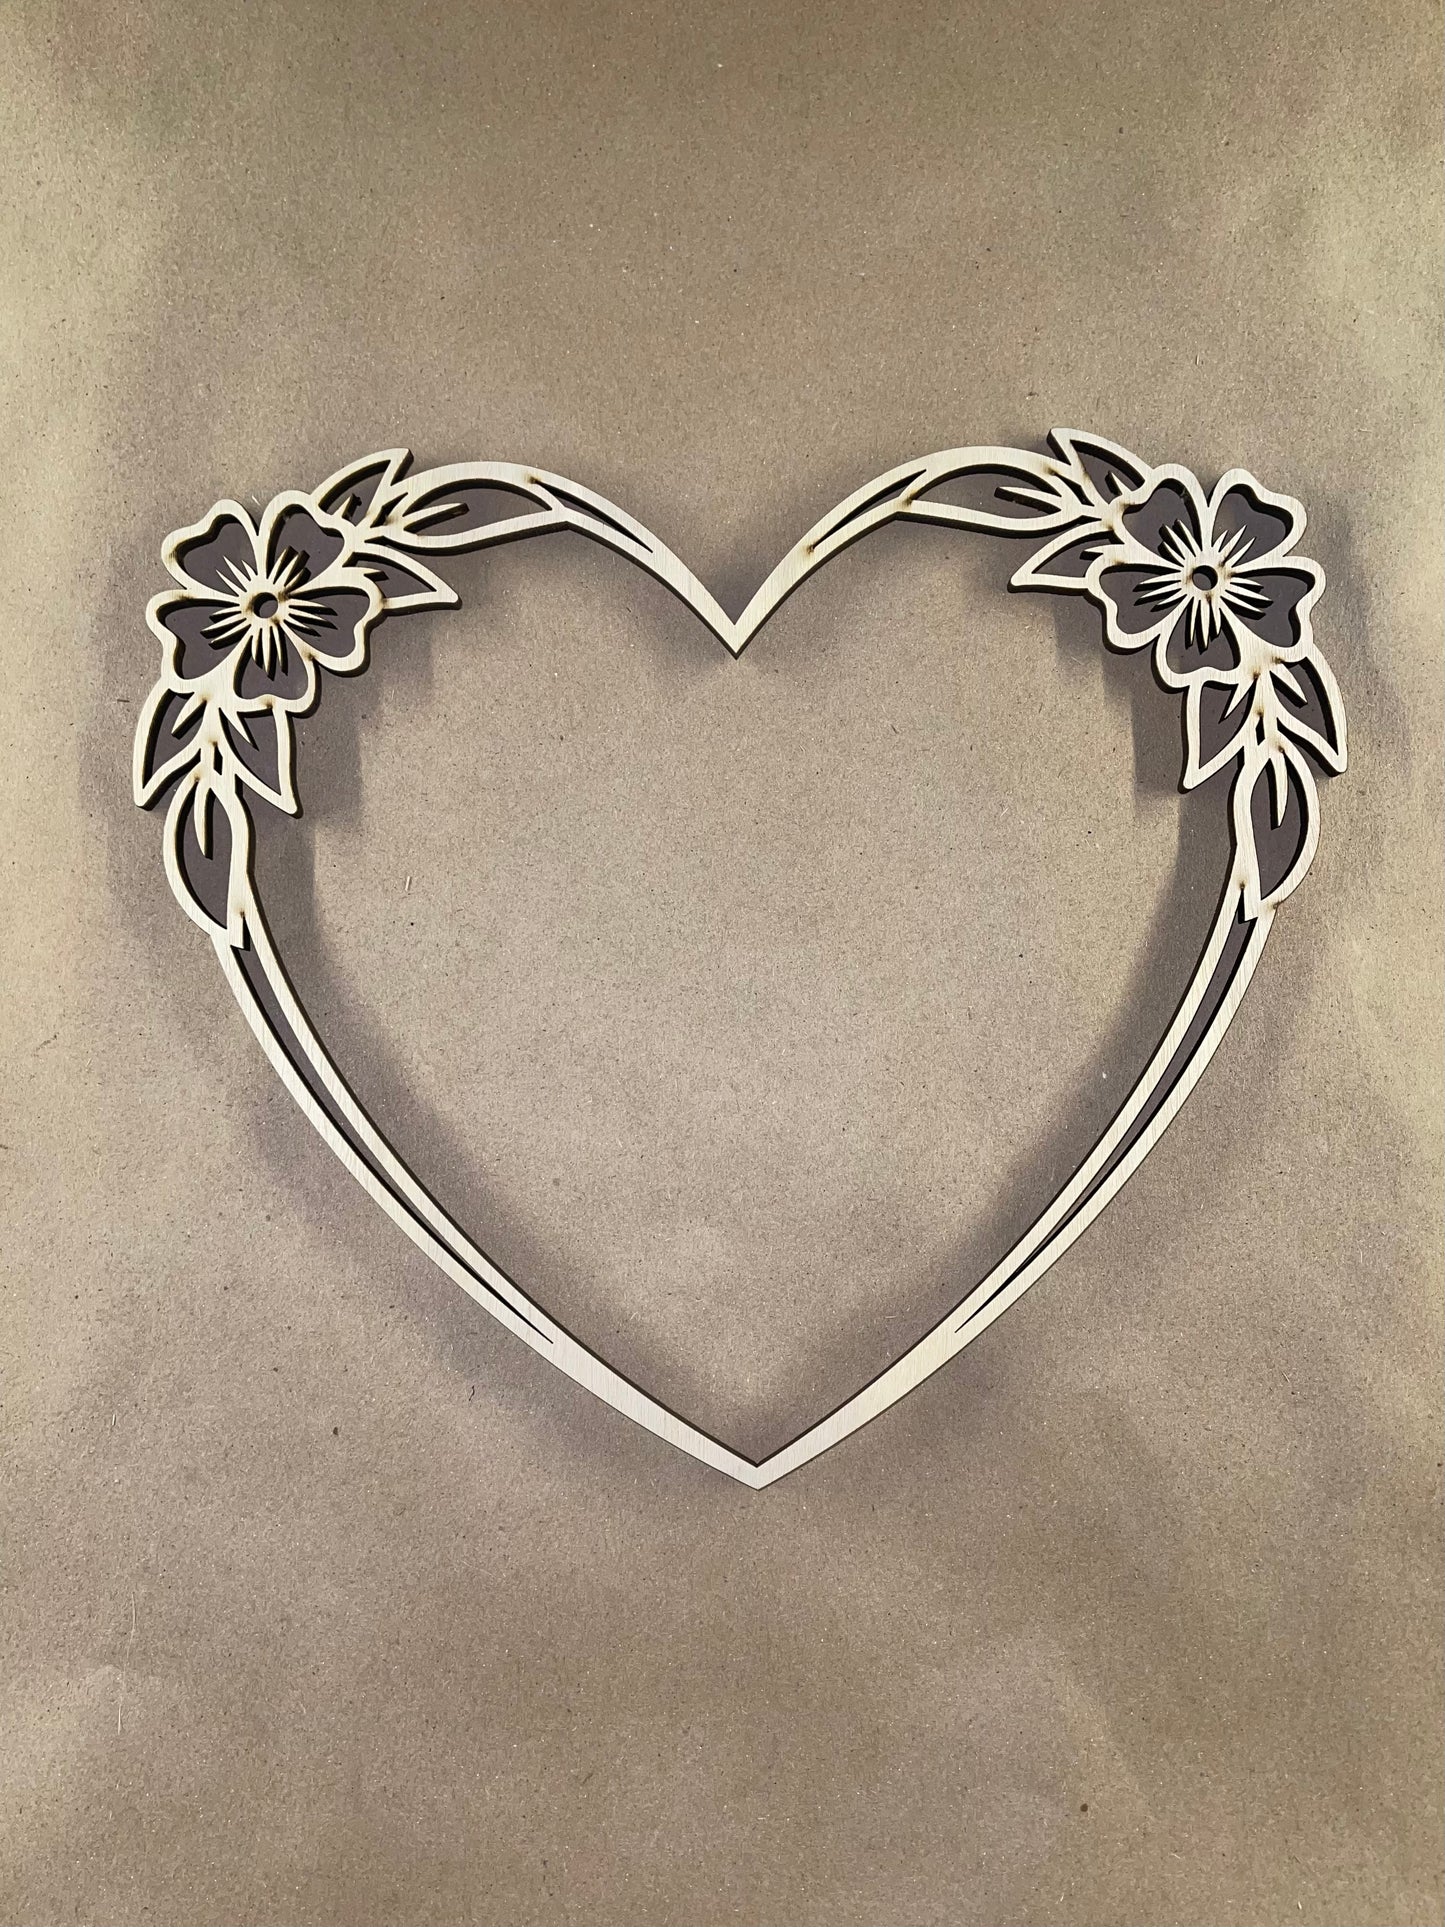 Floral Heart Unfinished Wood frame. Resin art frame. DIY wood cutout. Unfinished laser cut wood resin frame.